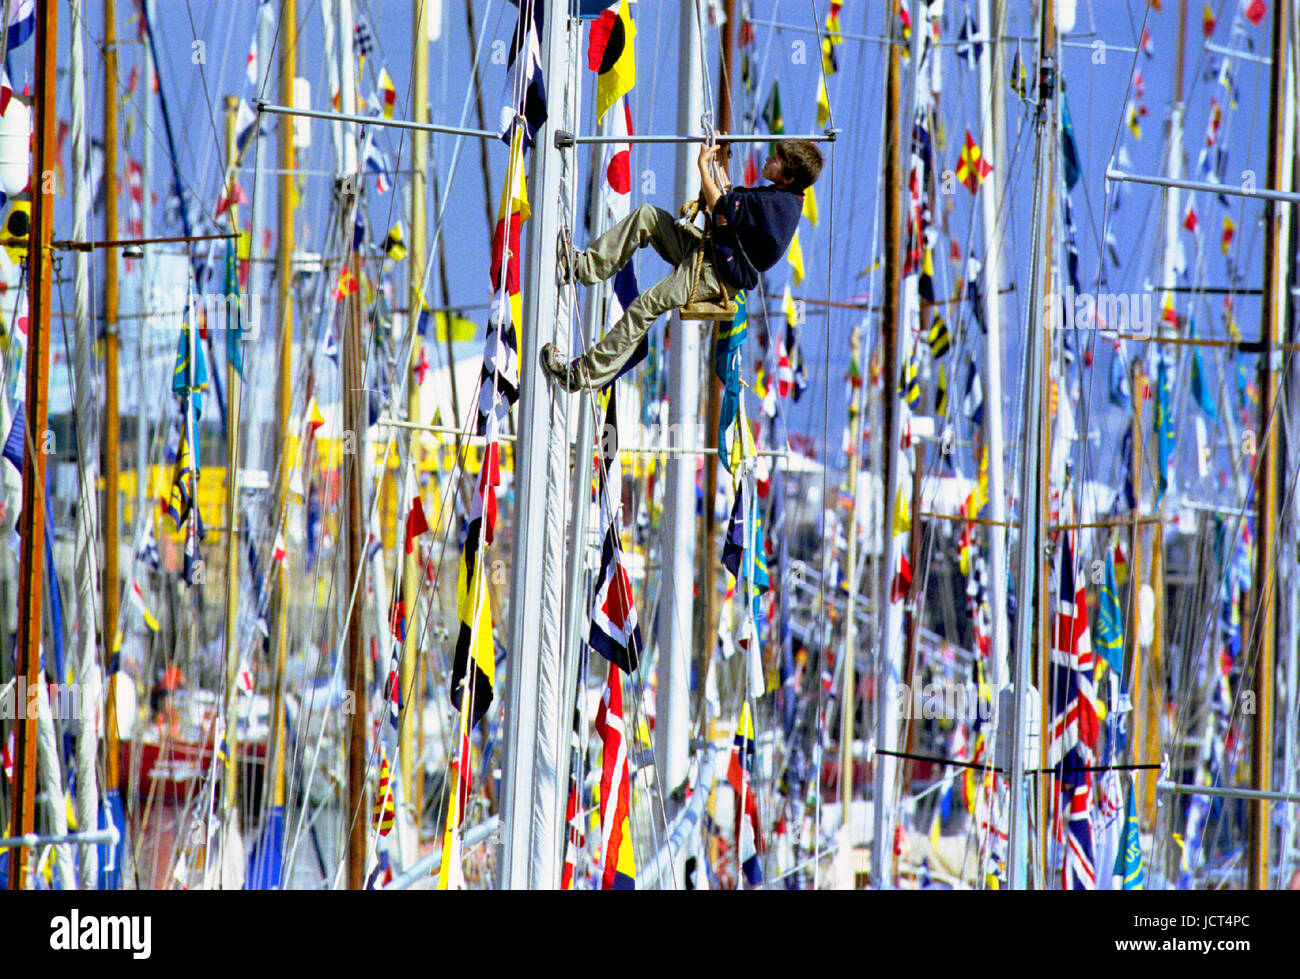 Das internationale Festival des Meeres mit 1000 Boote, fand Portsmouth Naval Dockyard in 2001. Ein Junge in einem Bootsmann Stuhl klettert einen Mast. Stockfoto